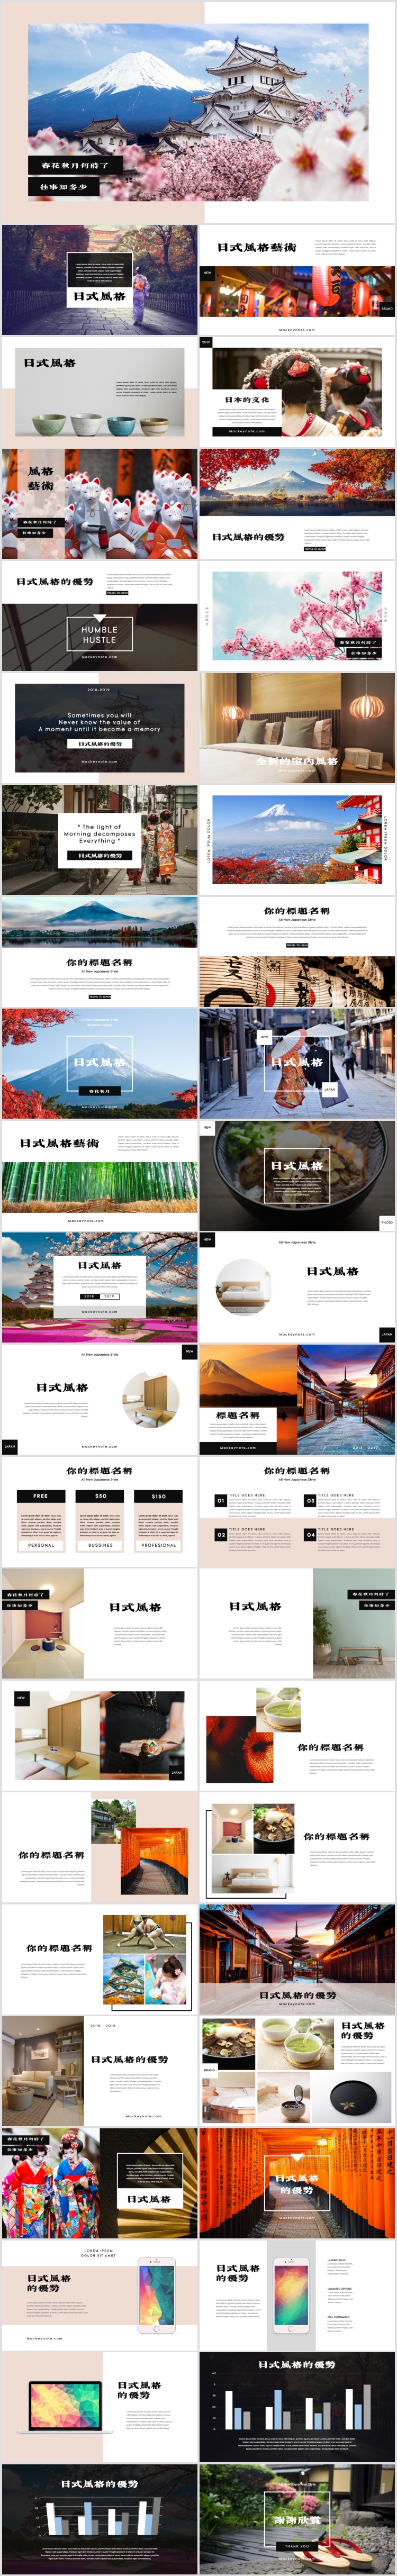 日式风格设计日本介绍文化宣传PPT模板